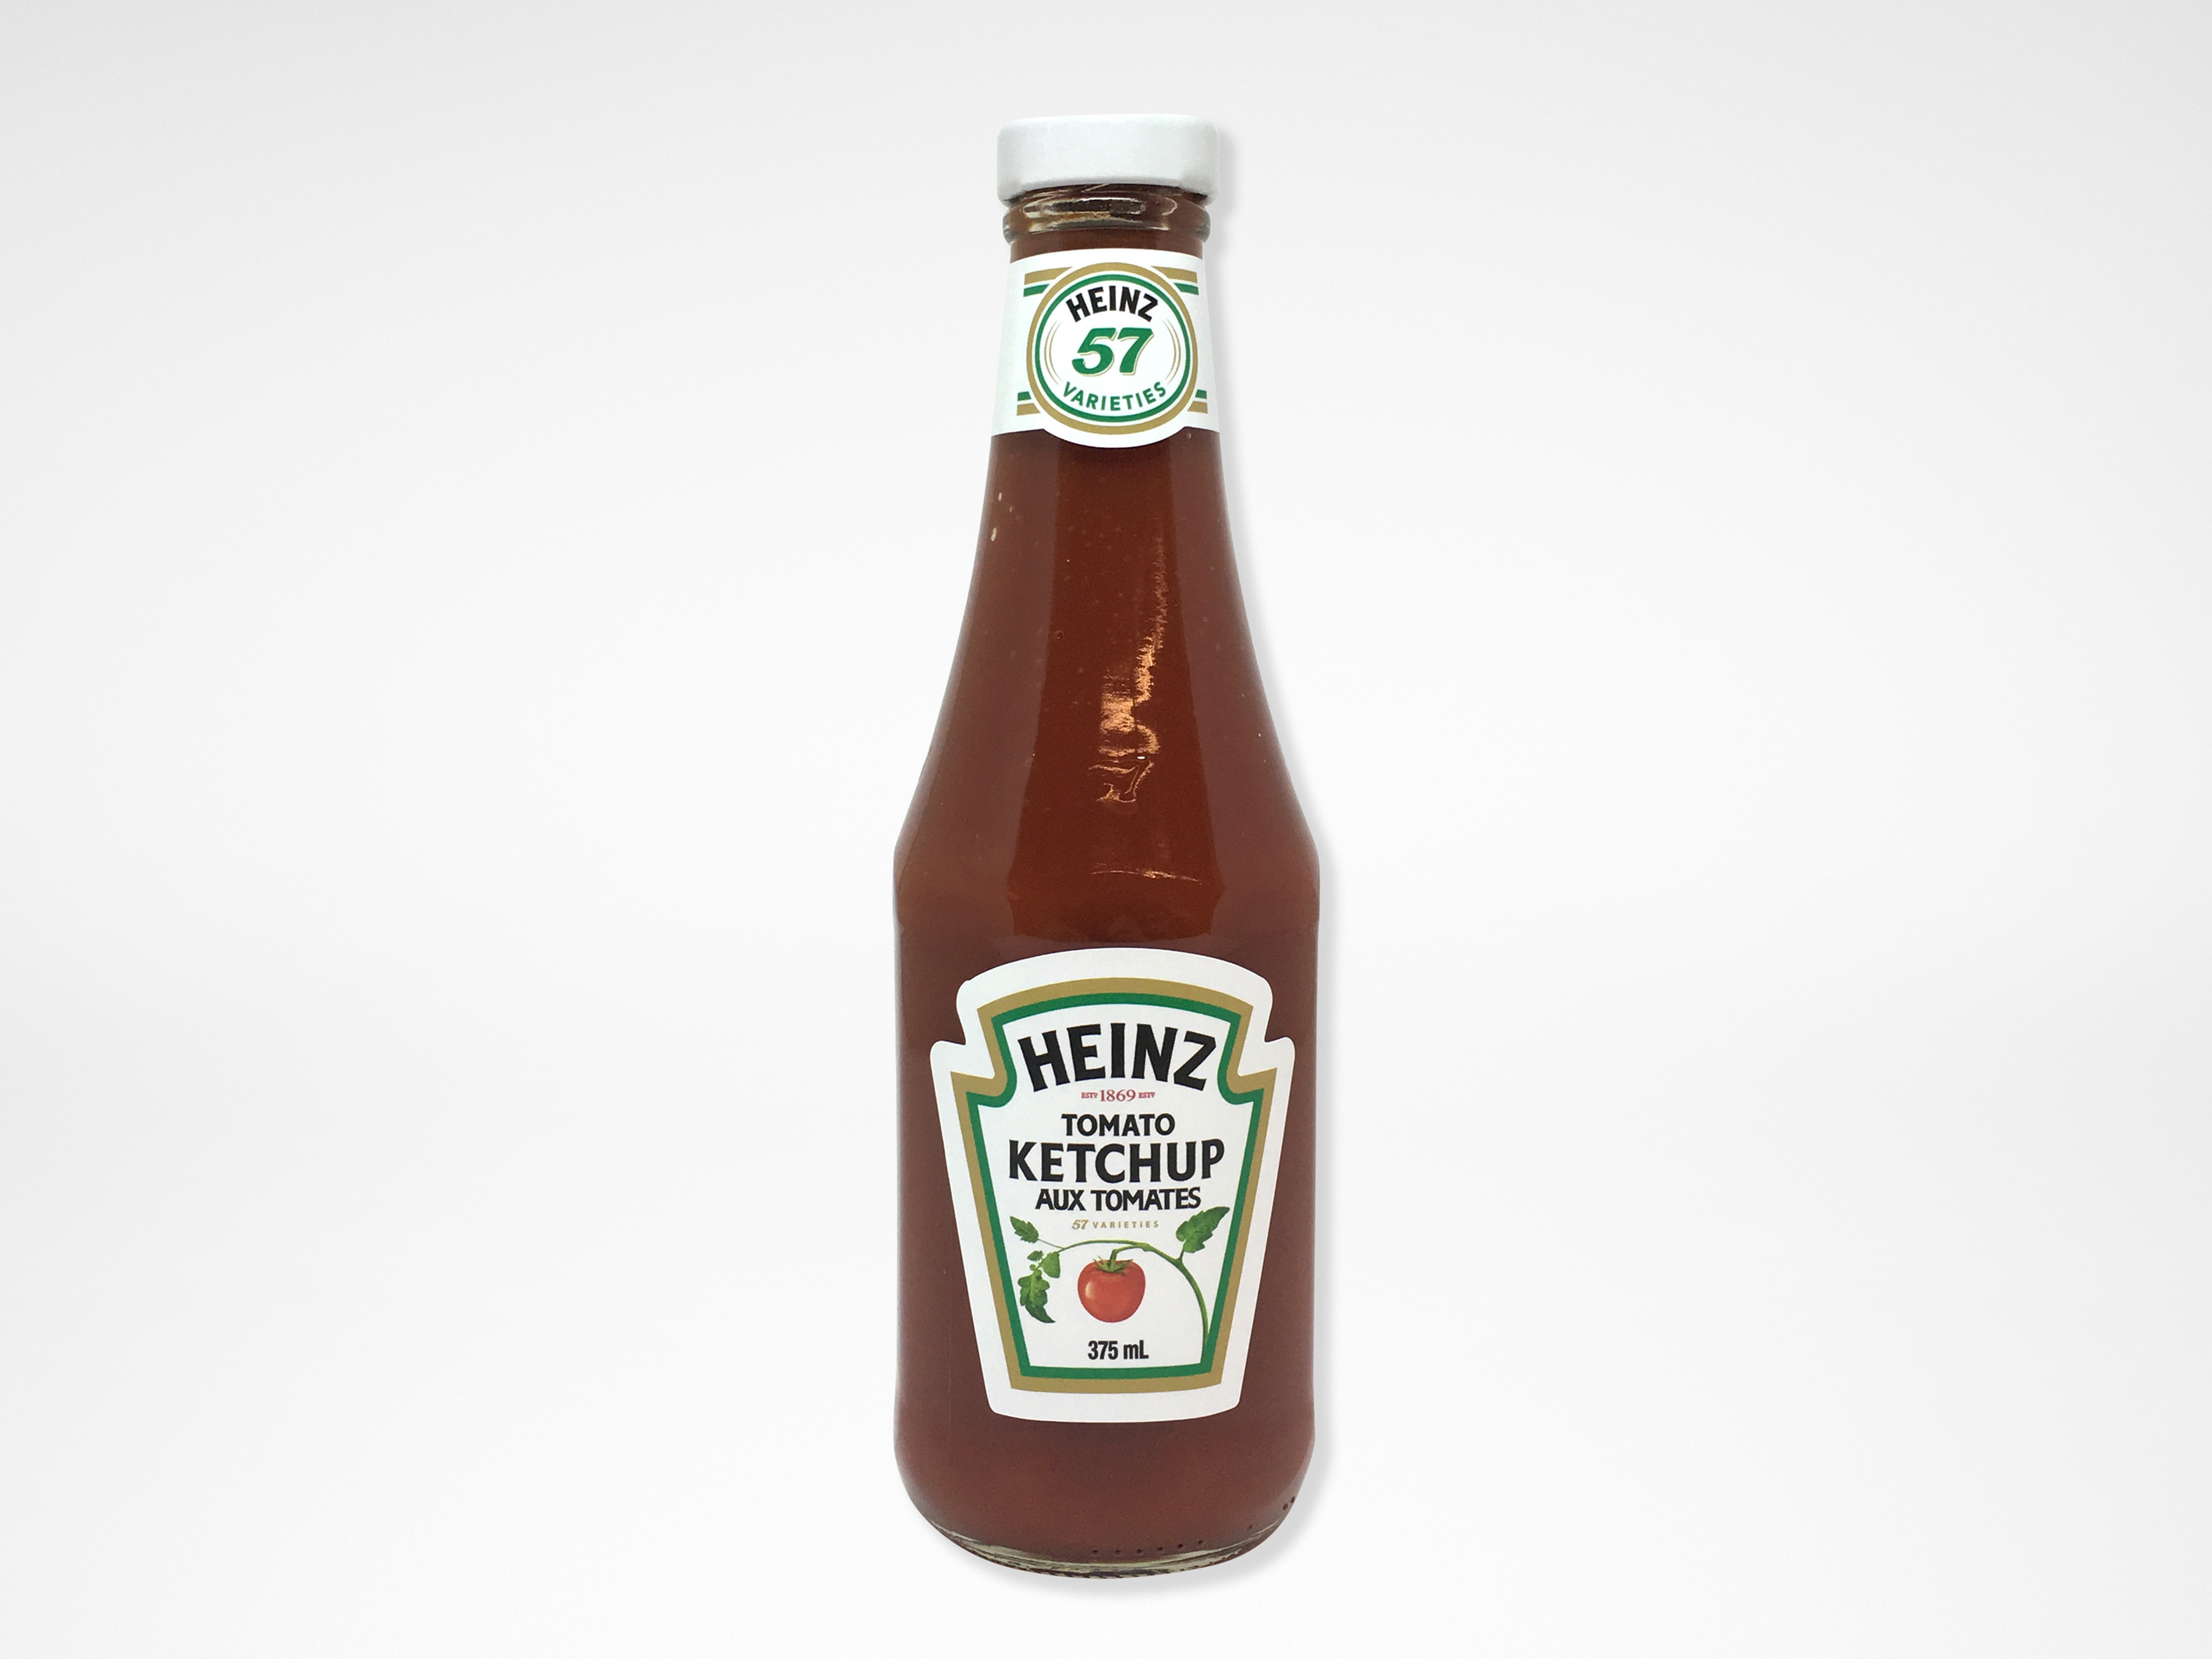 https://0901.nccdn.net/4_2/000/000/038/2d3/Heinz-ketchup-4032x3024.jpg